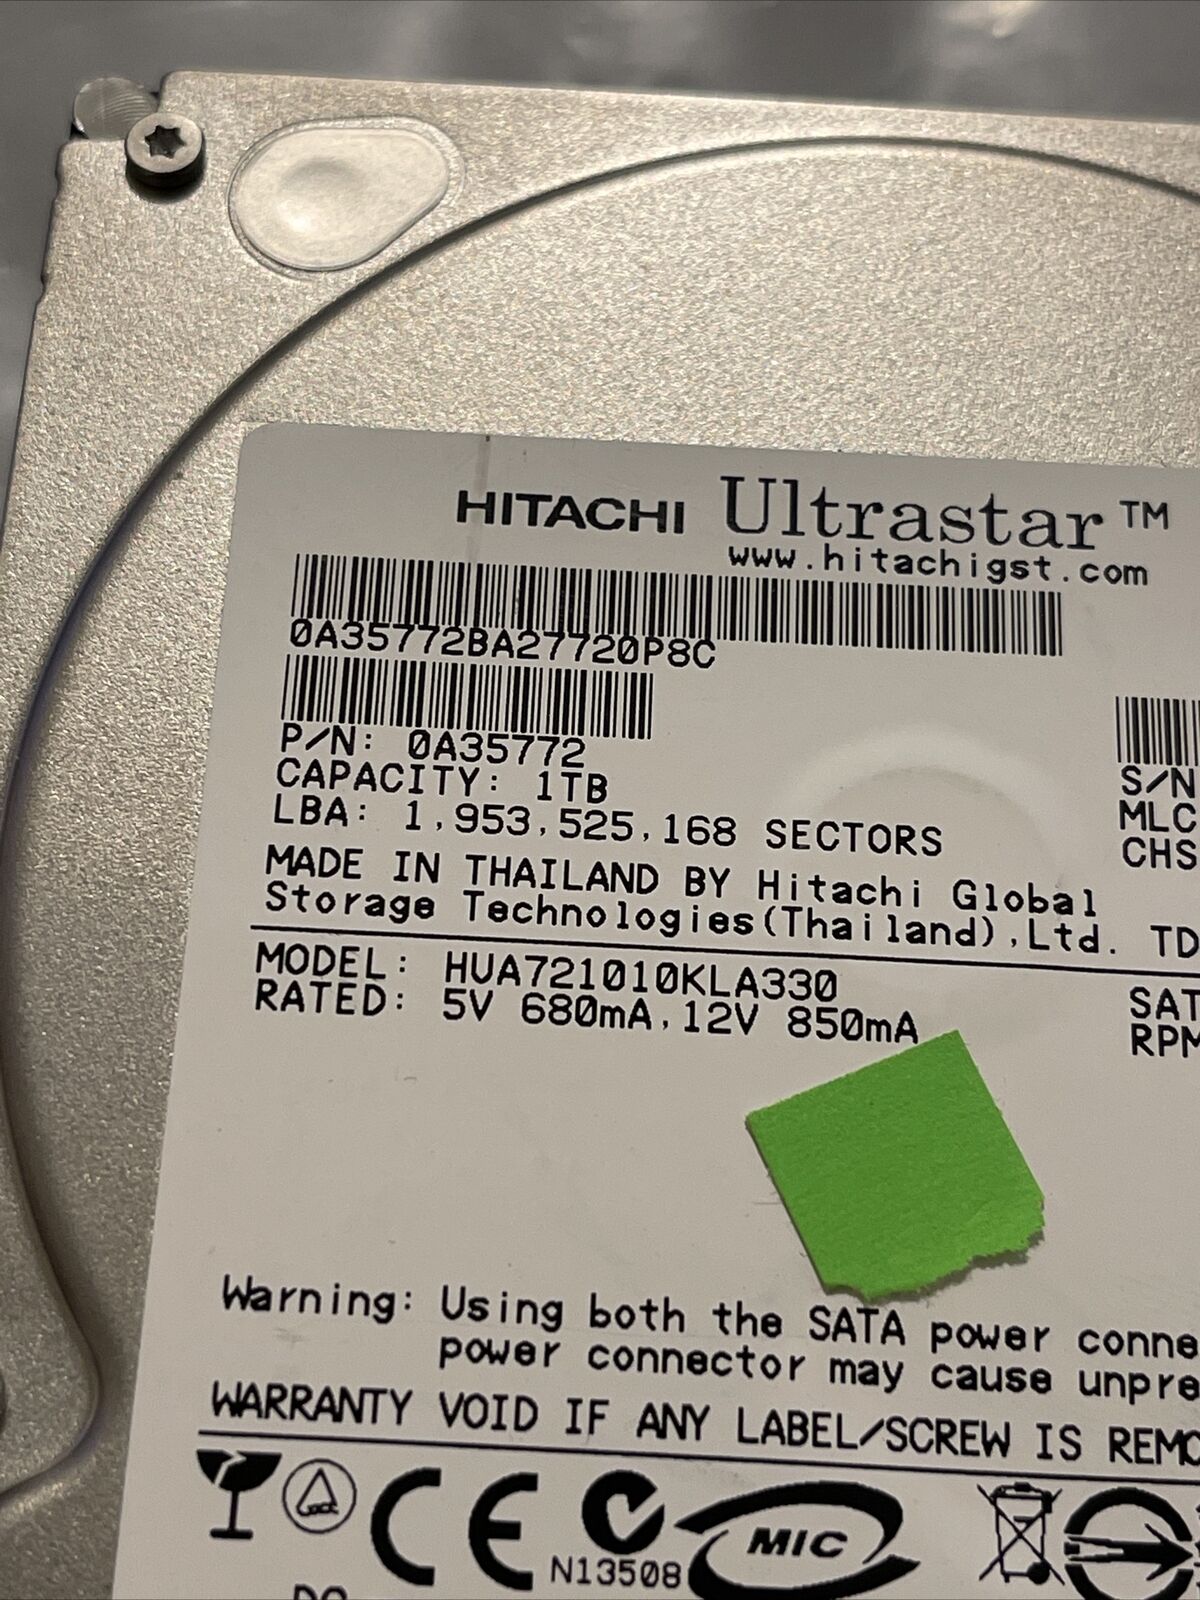 Hitachi HUA721010KLA330 0A35772 1TB 7200RPM SATA 3.5" HDD